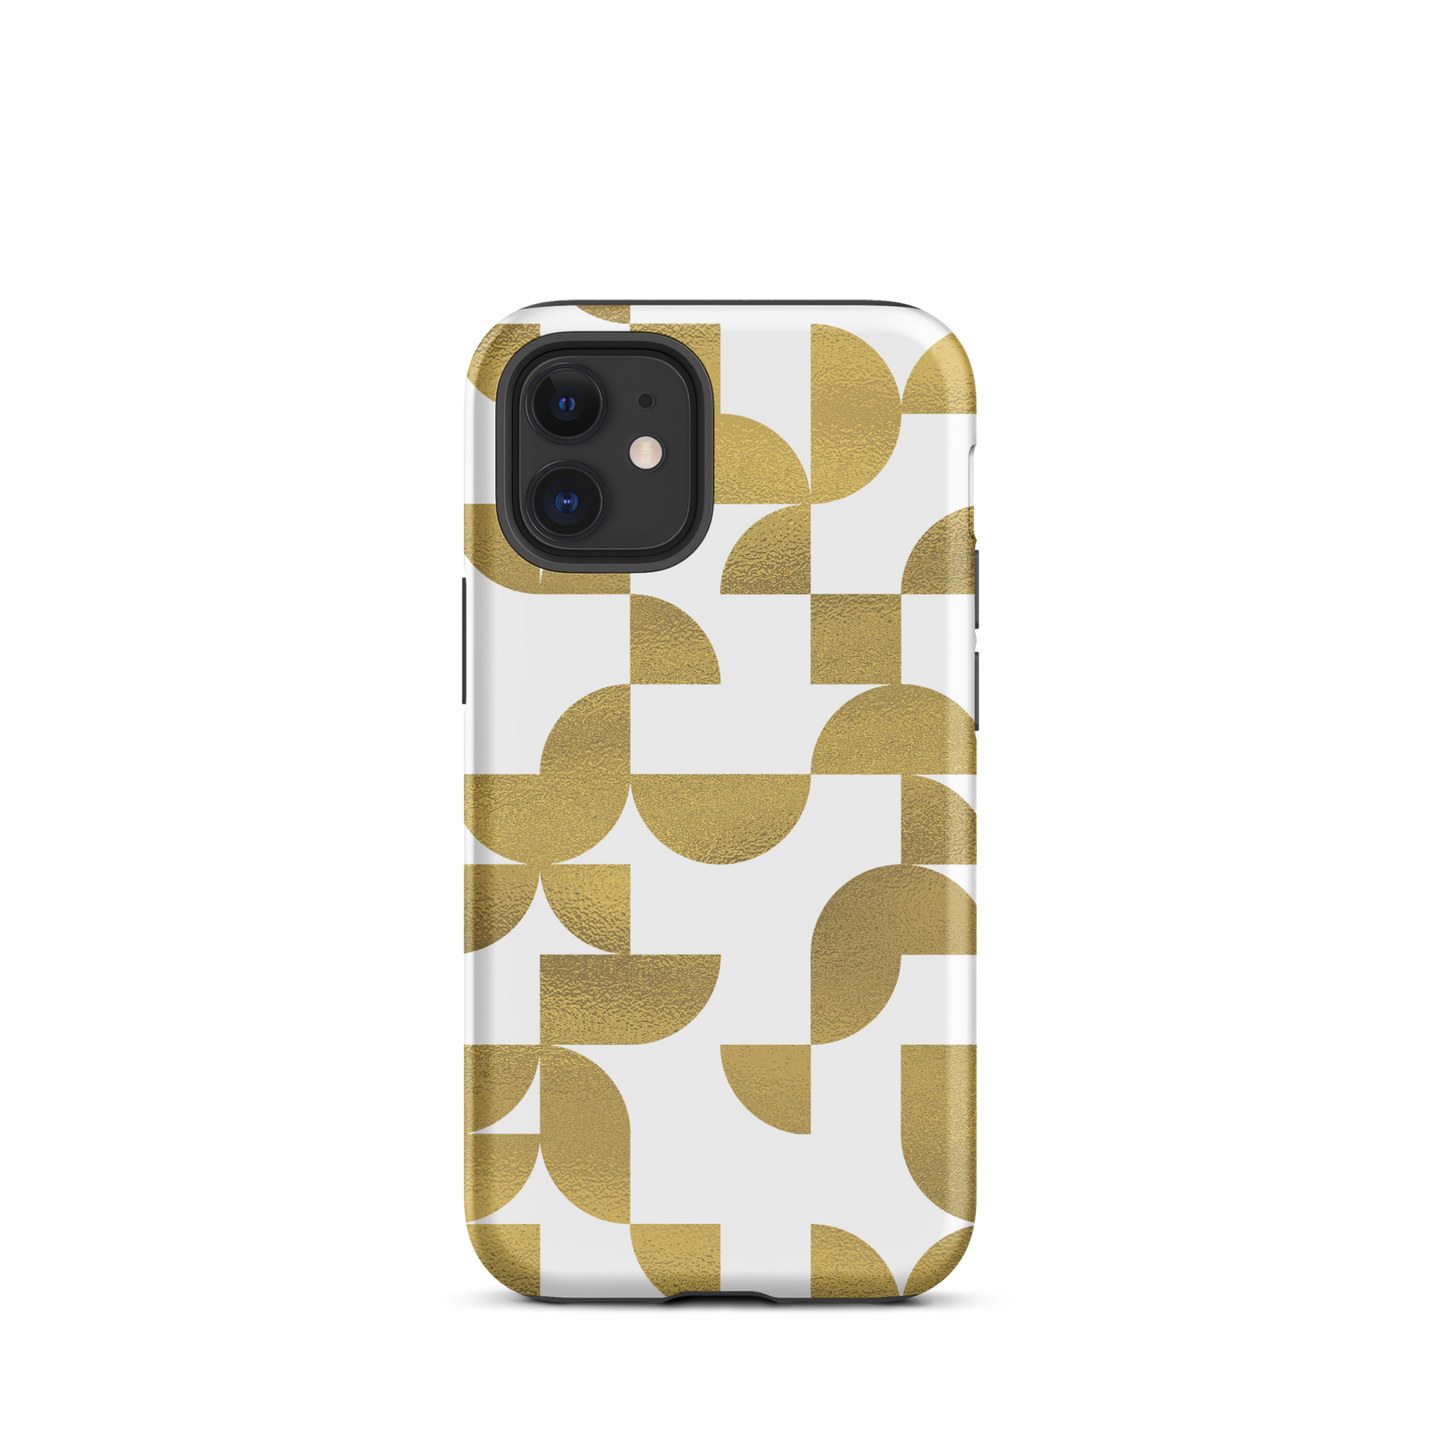 iPhone 12 mini tough case in Geometria I gold design